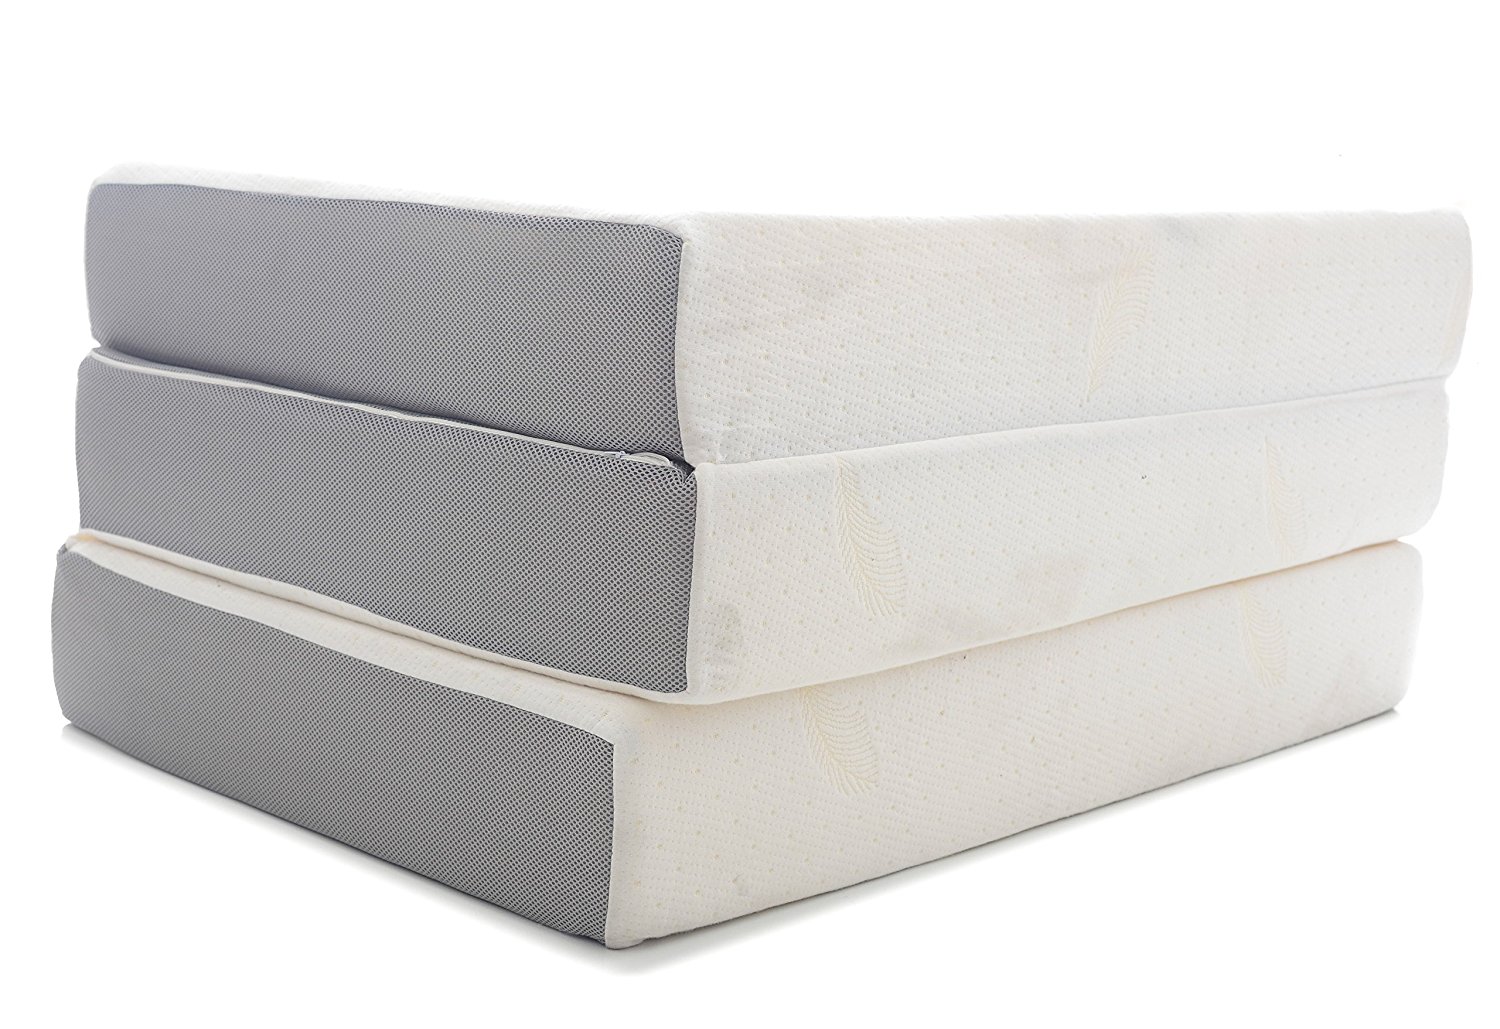 tri fold twin mattress